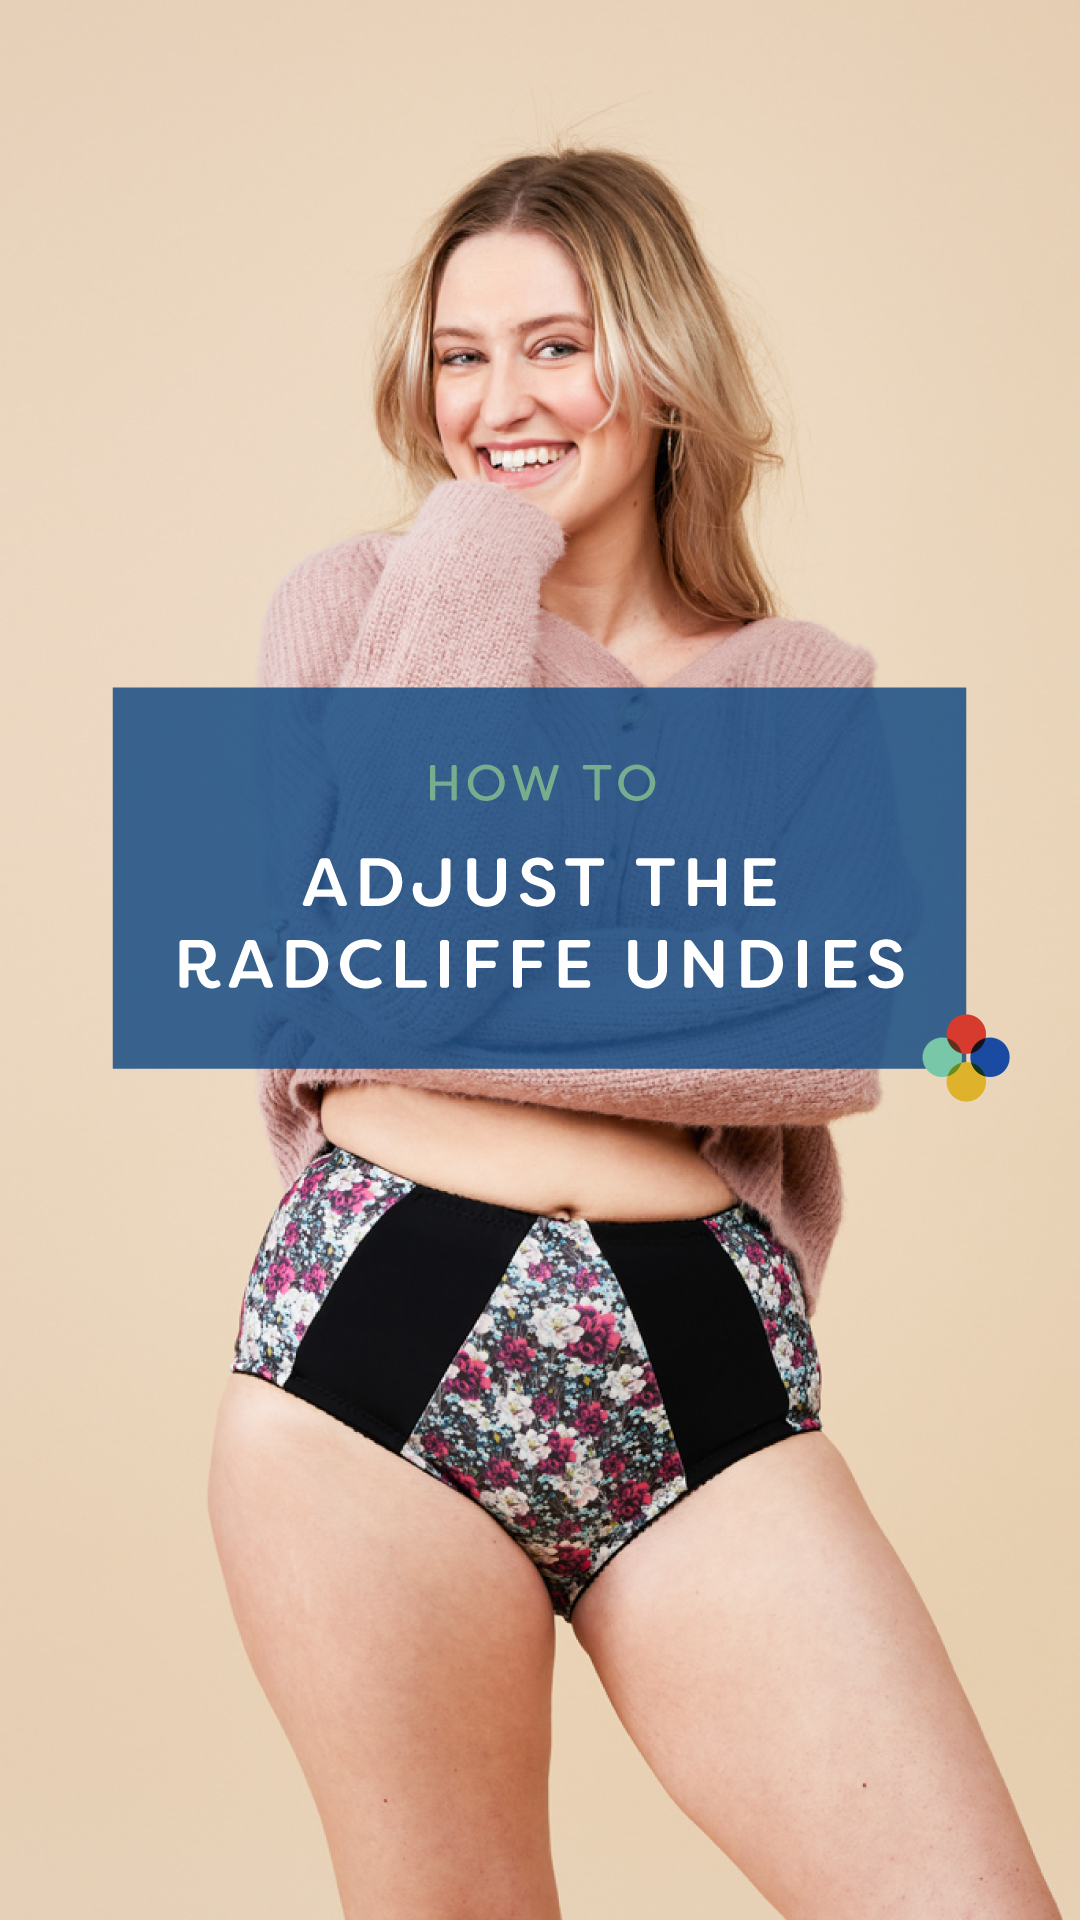 How to adjust an underwear pattern, featuring the Radcliffe Undies!